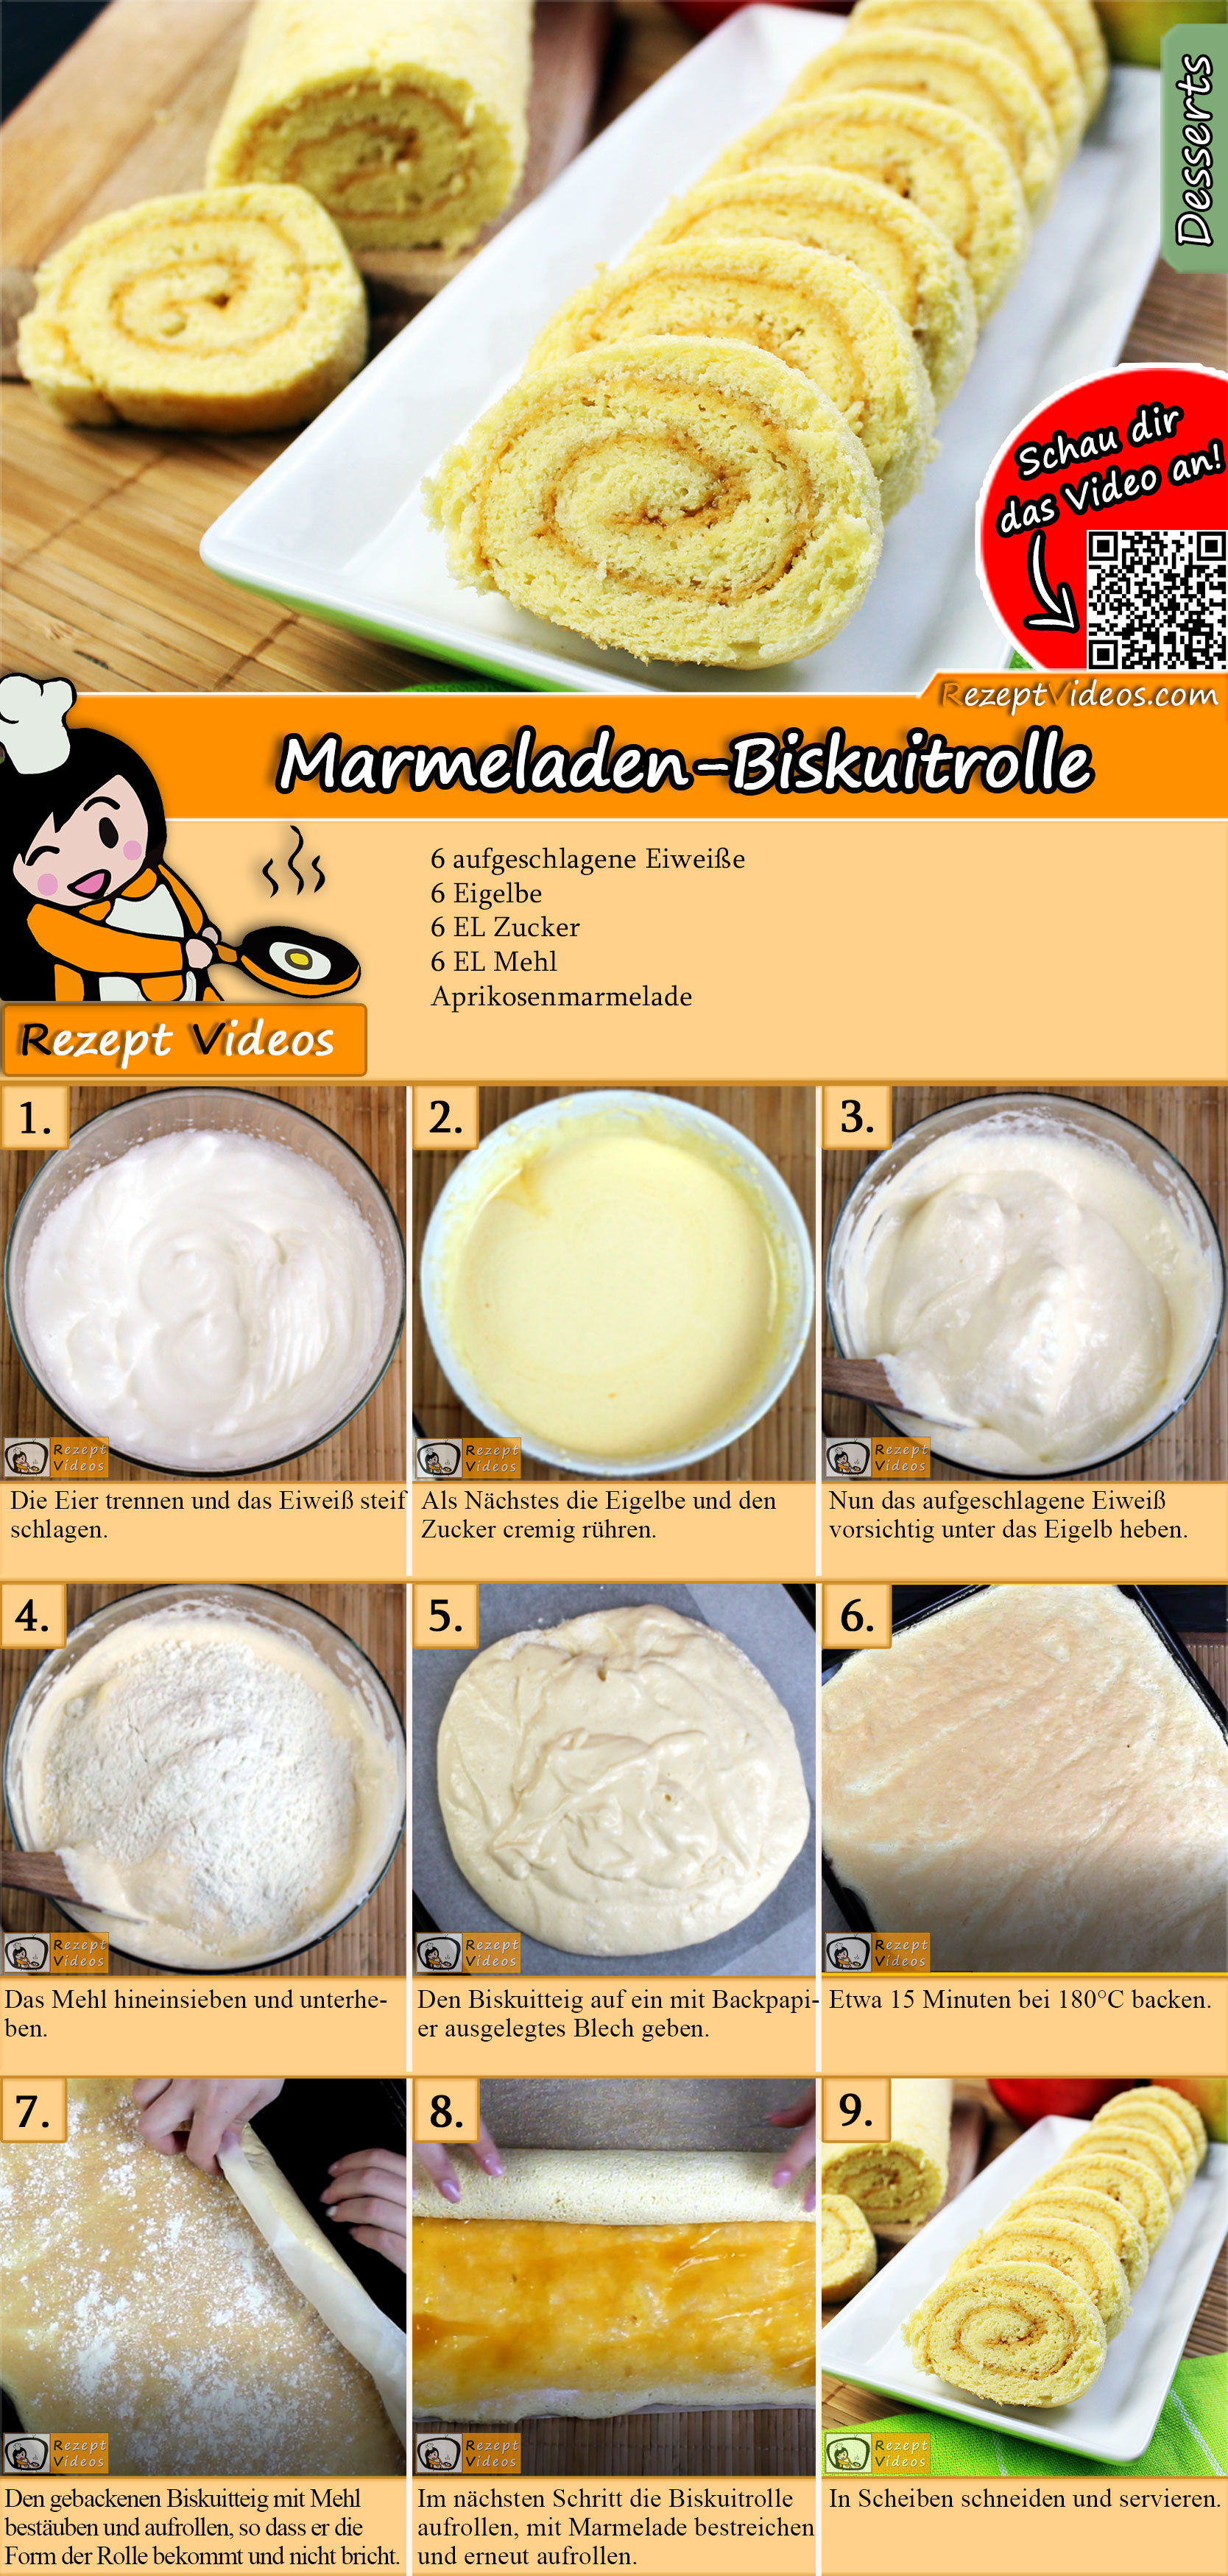 Marmeladen-Biskuitrolle Rezept mit Video